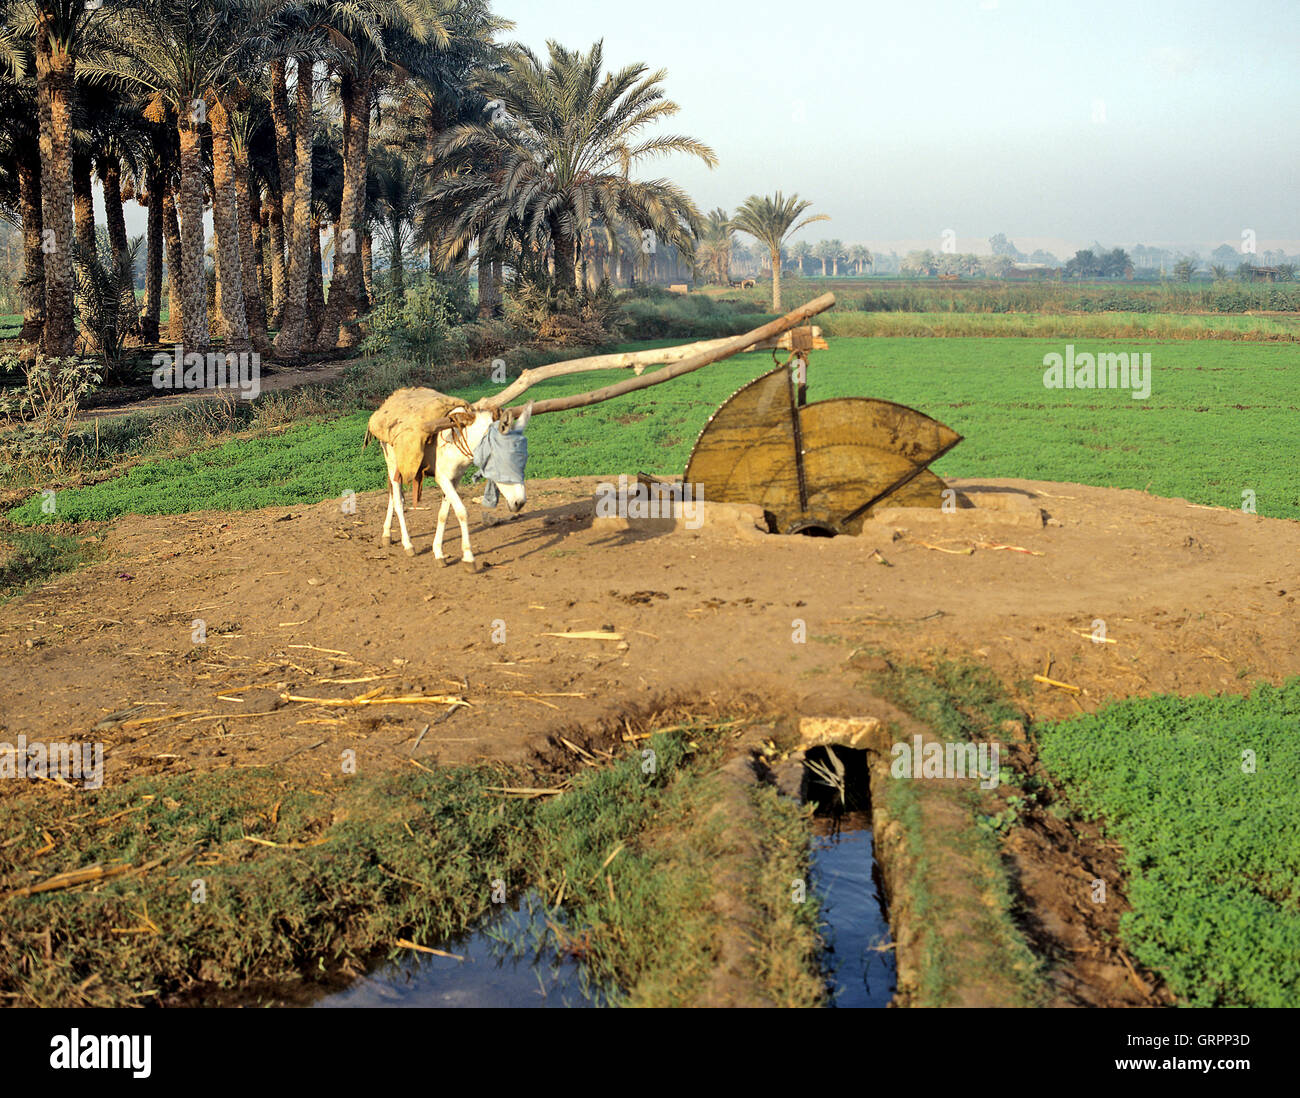 Donkey well, Fayyum, Upper Egypt Stock Photo